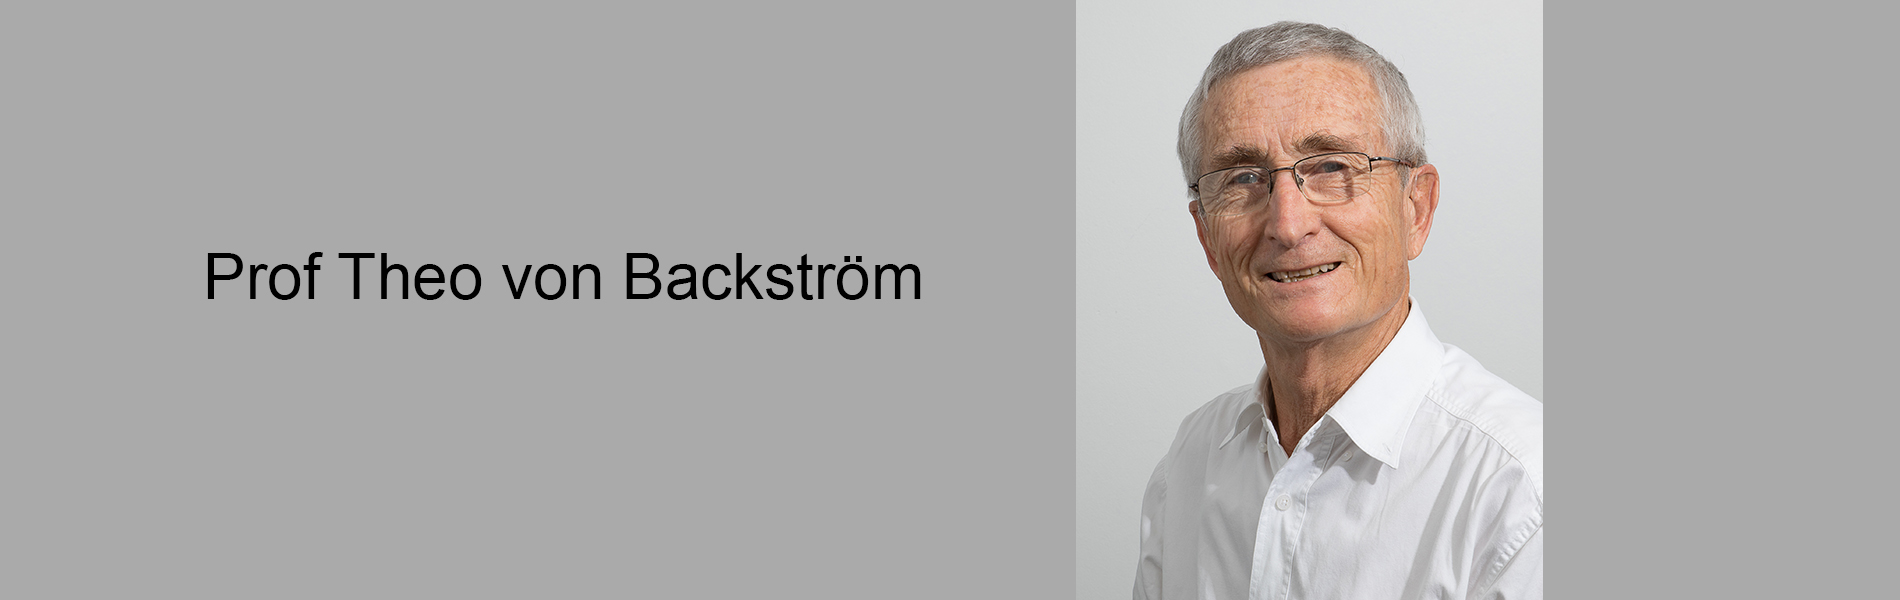 Prof Theo von Backstrom